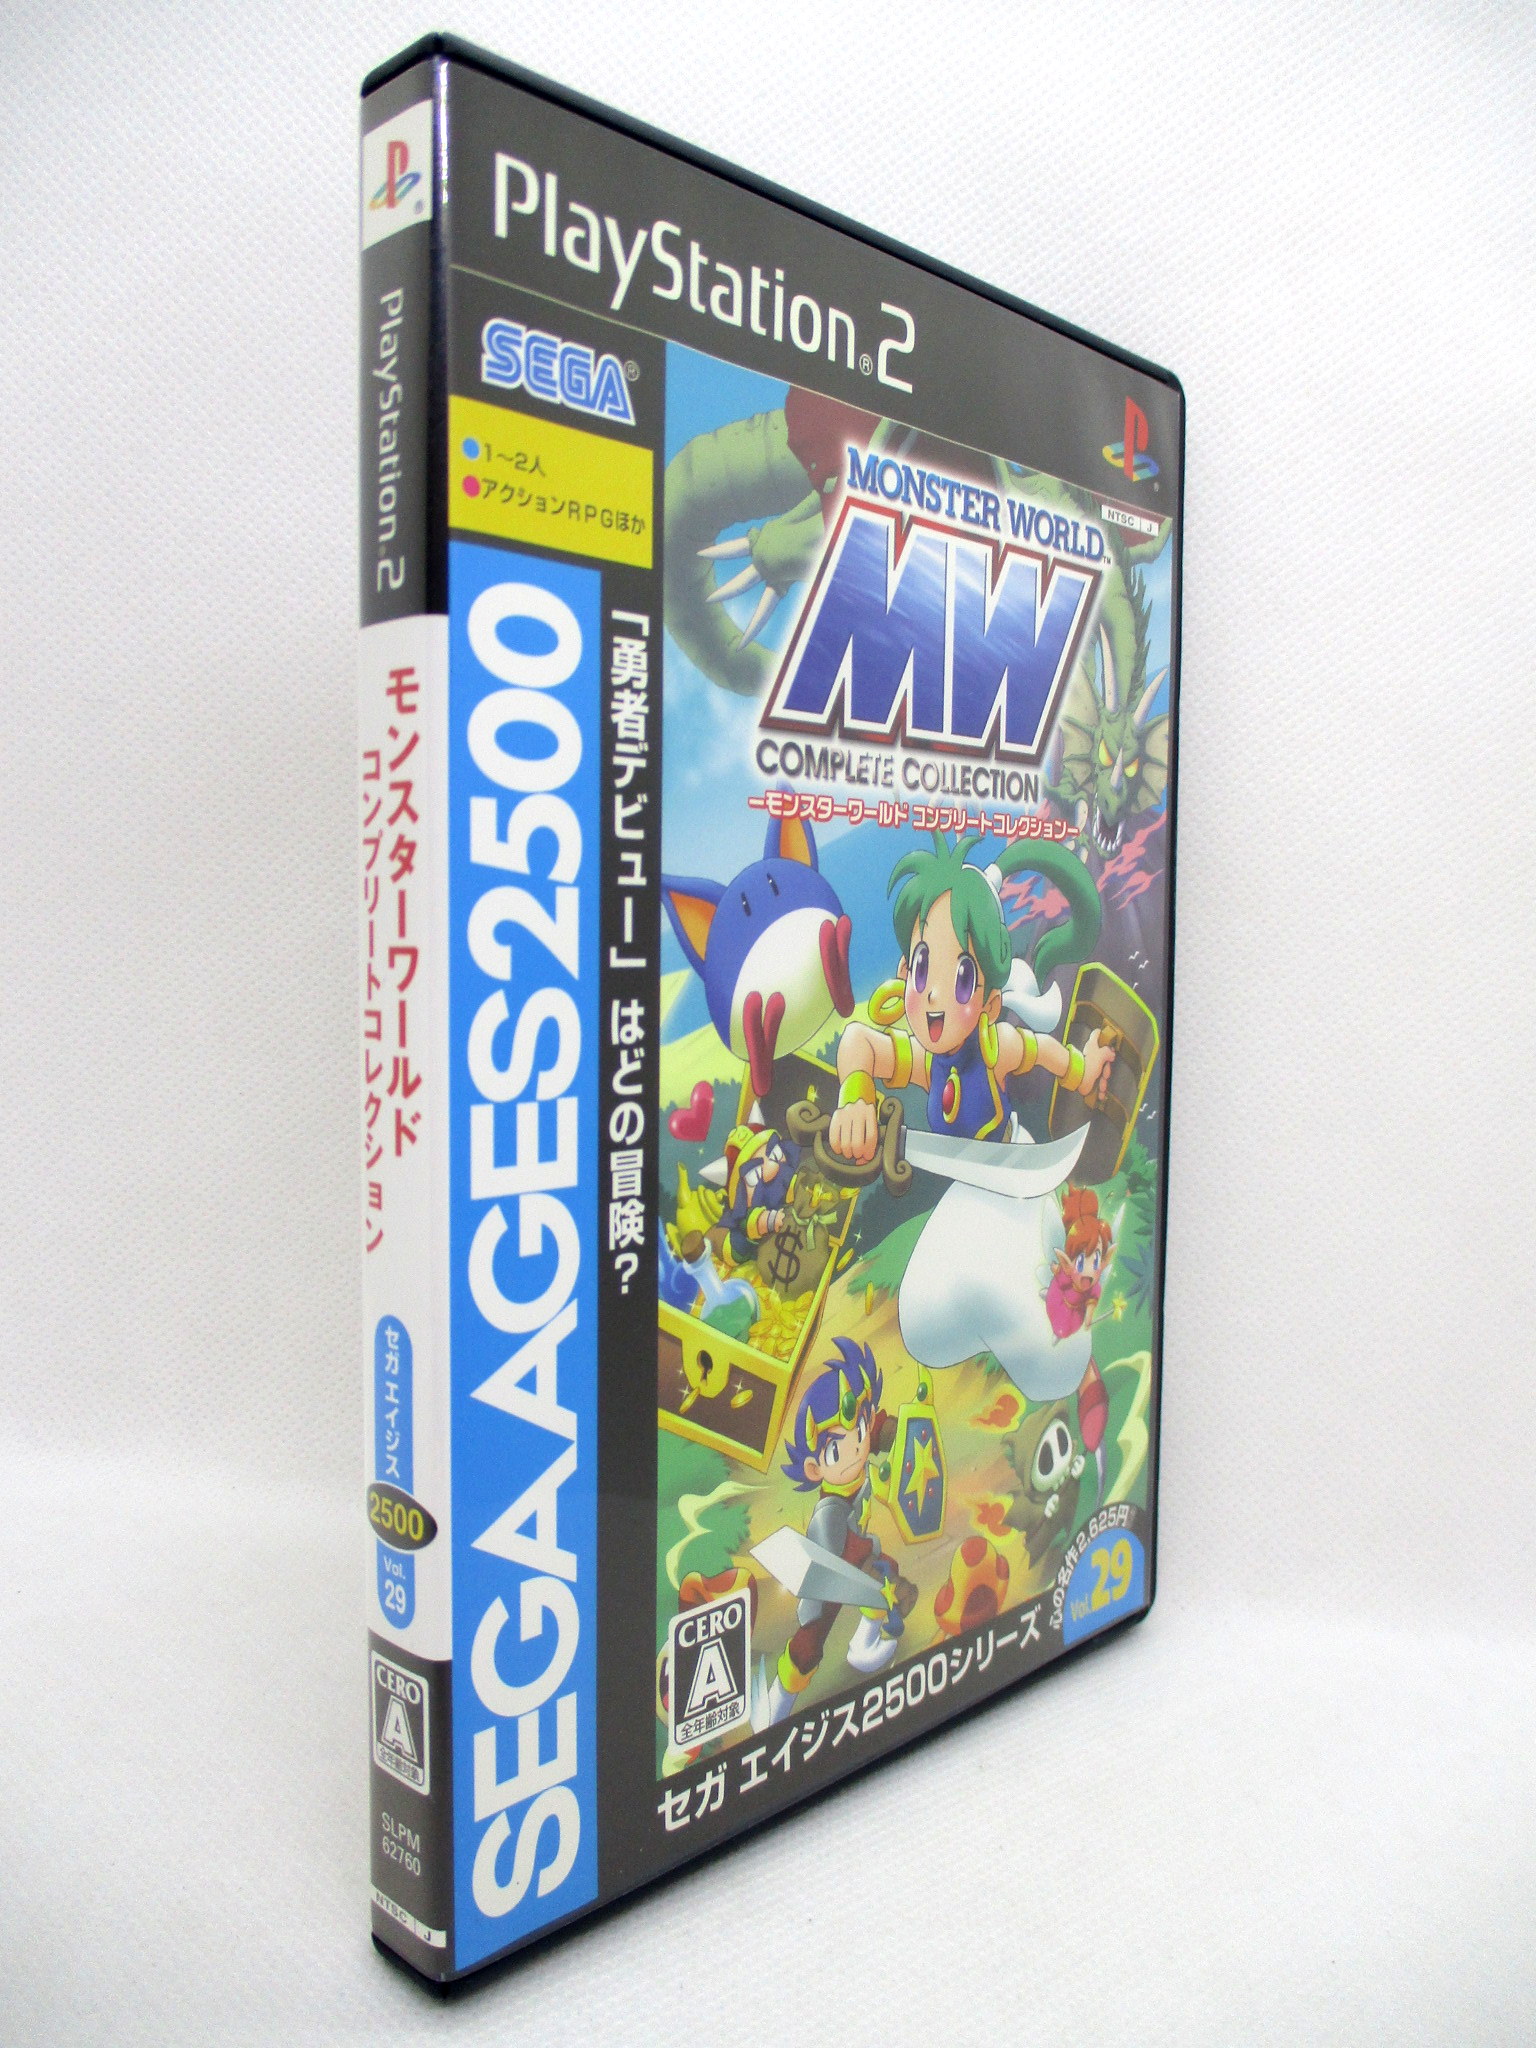 PS2 モンスターワールド コンプリートコレクション セガエイジス2500 Vol.29